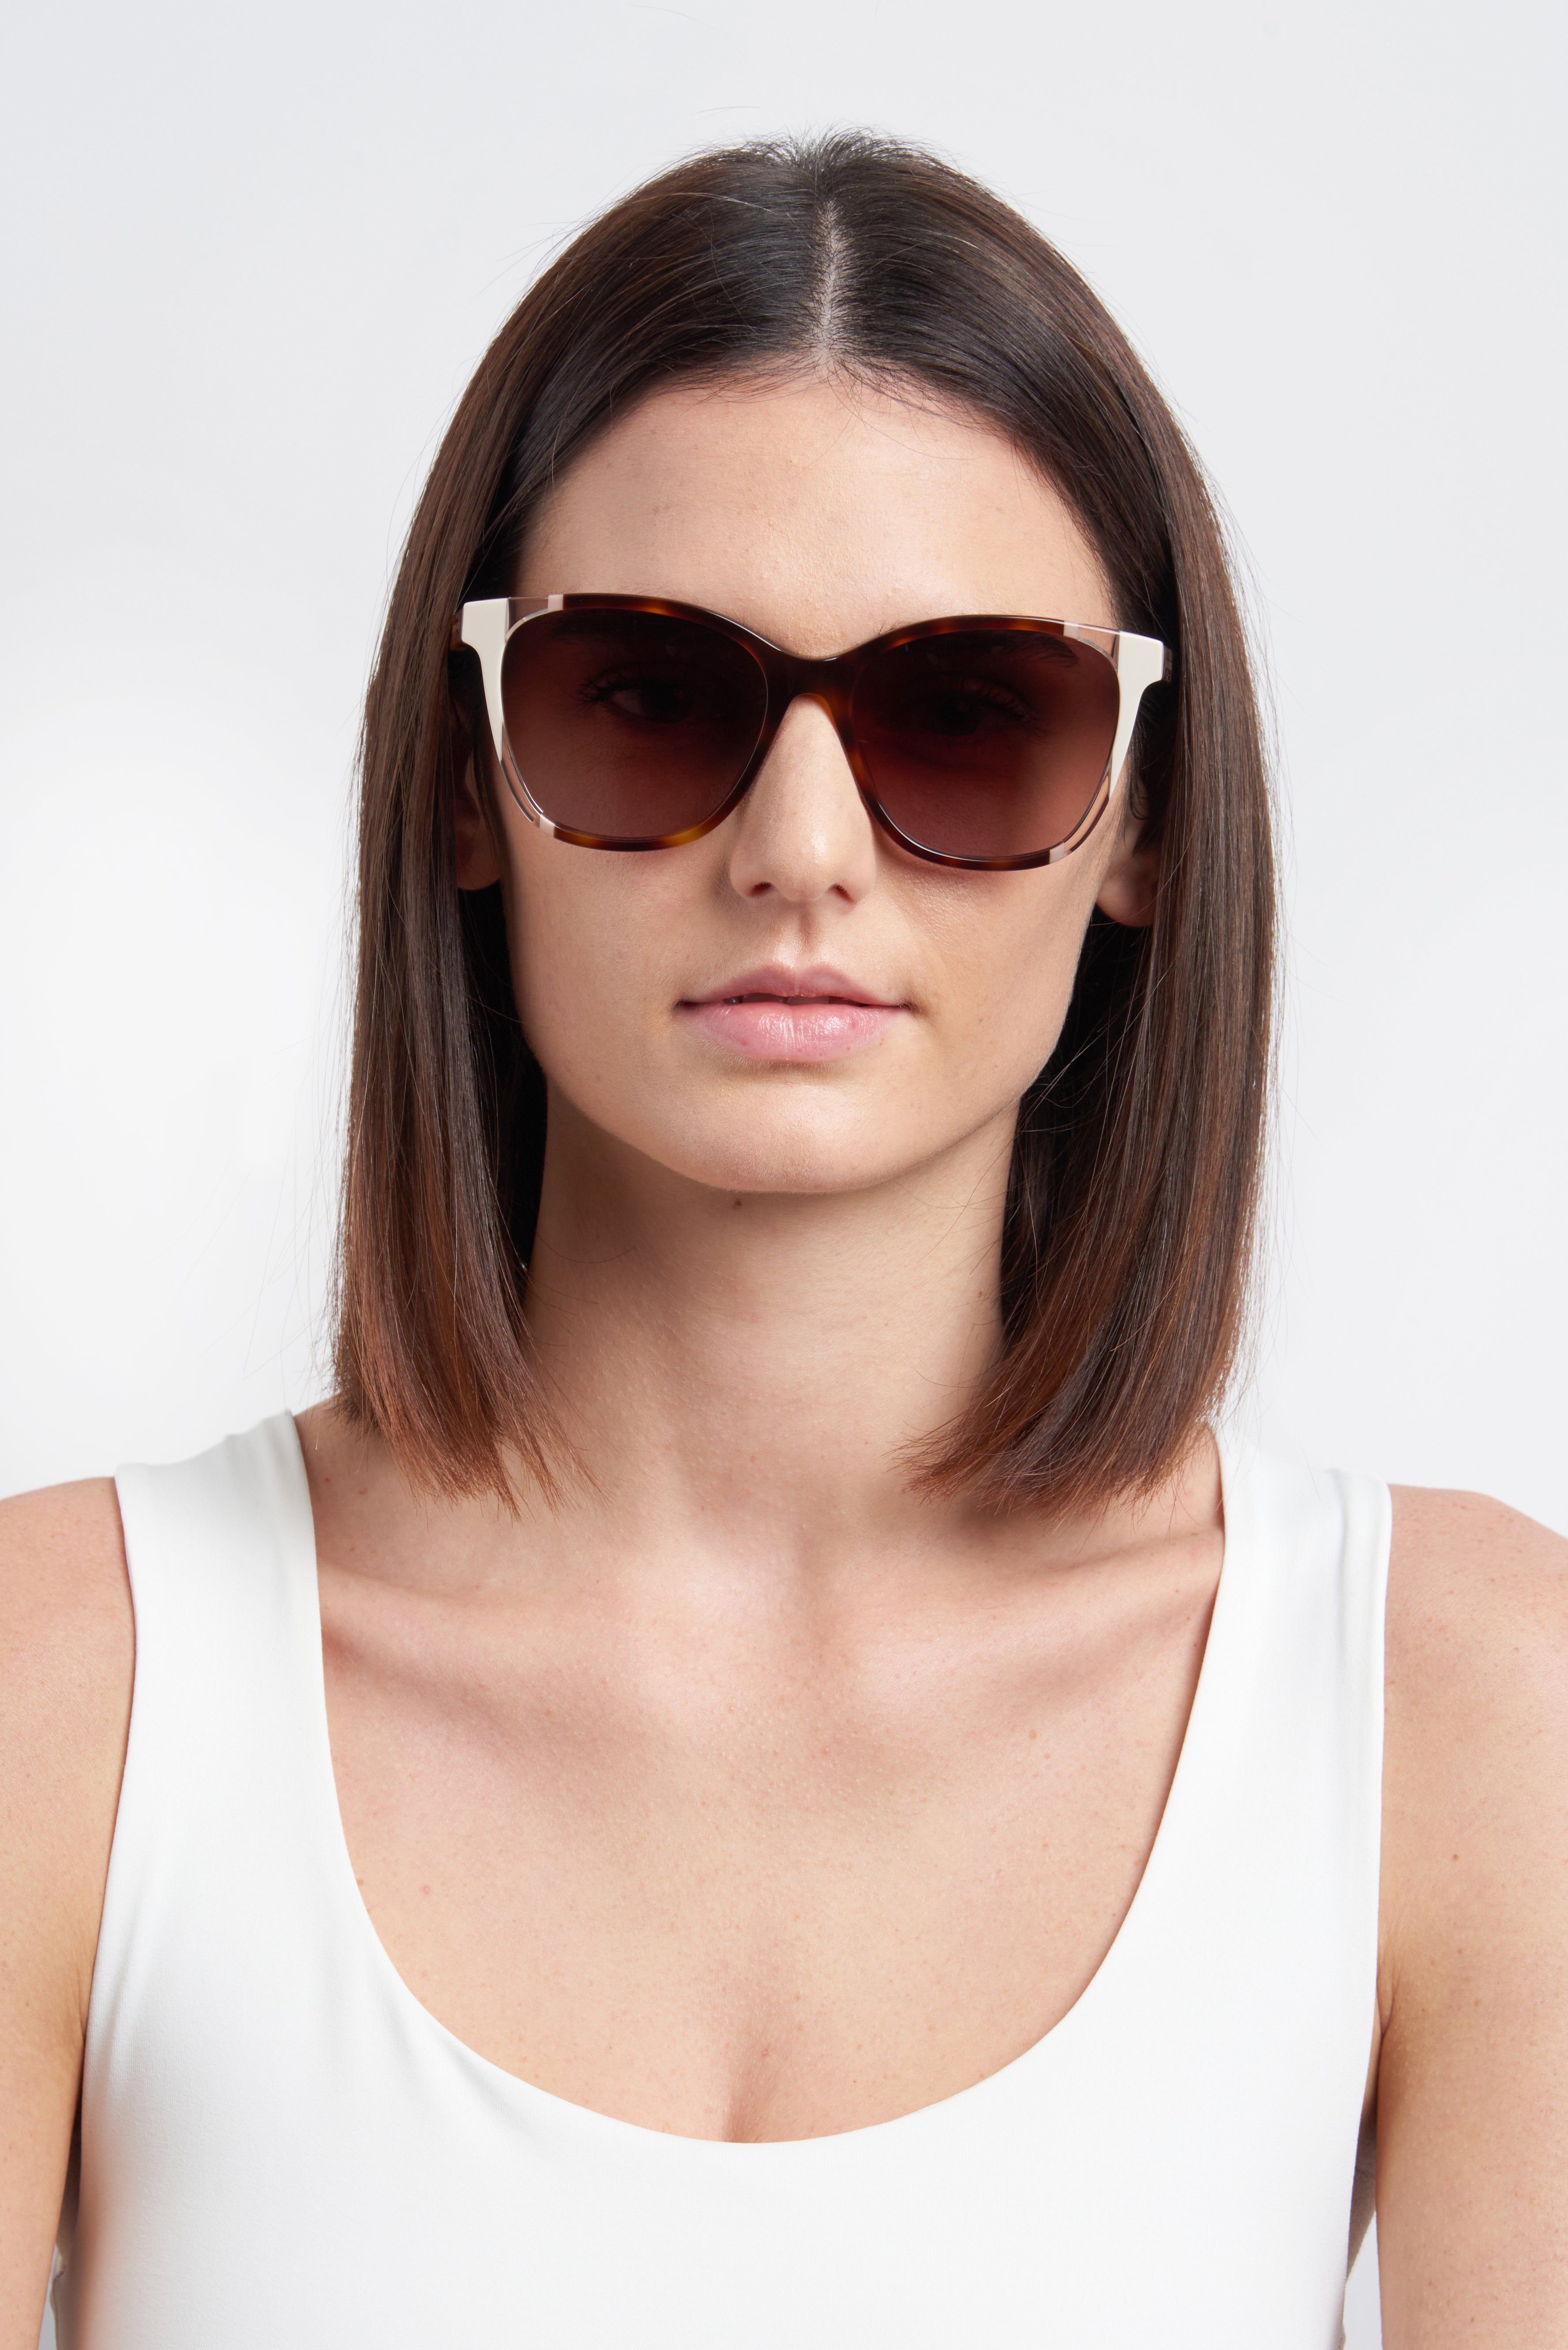 Carolina Herrera Round Stripe Sunglasses